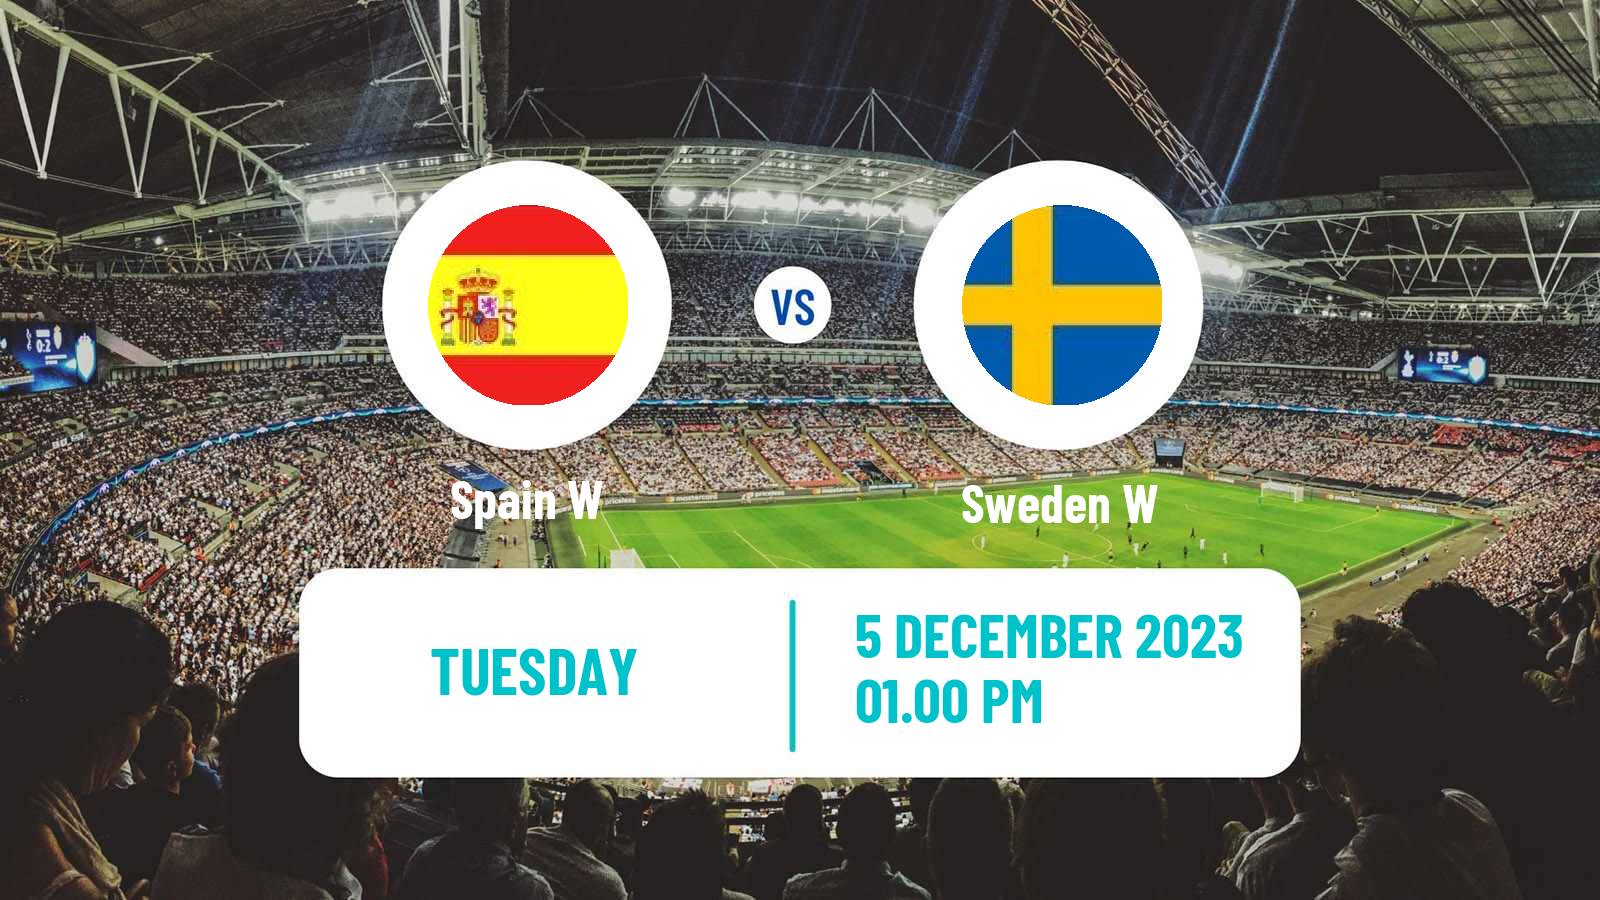 Soccer UEFA Nations League Women Spain W - Sweden W